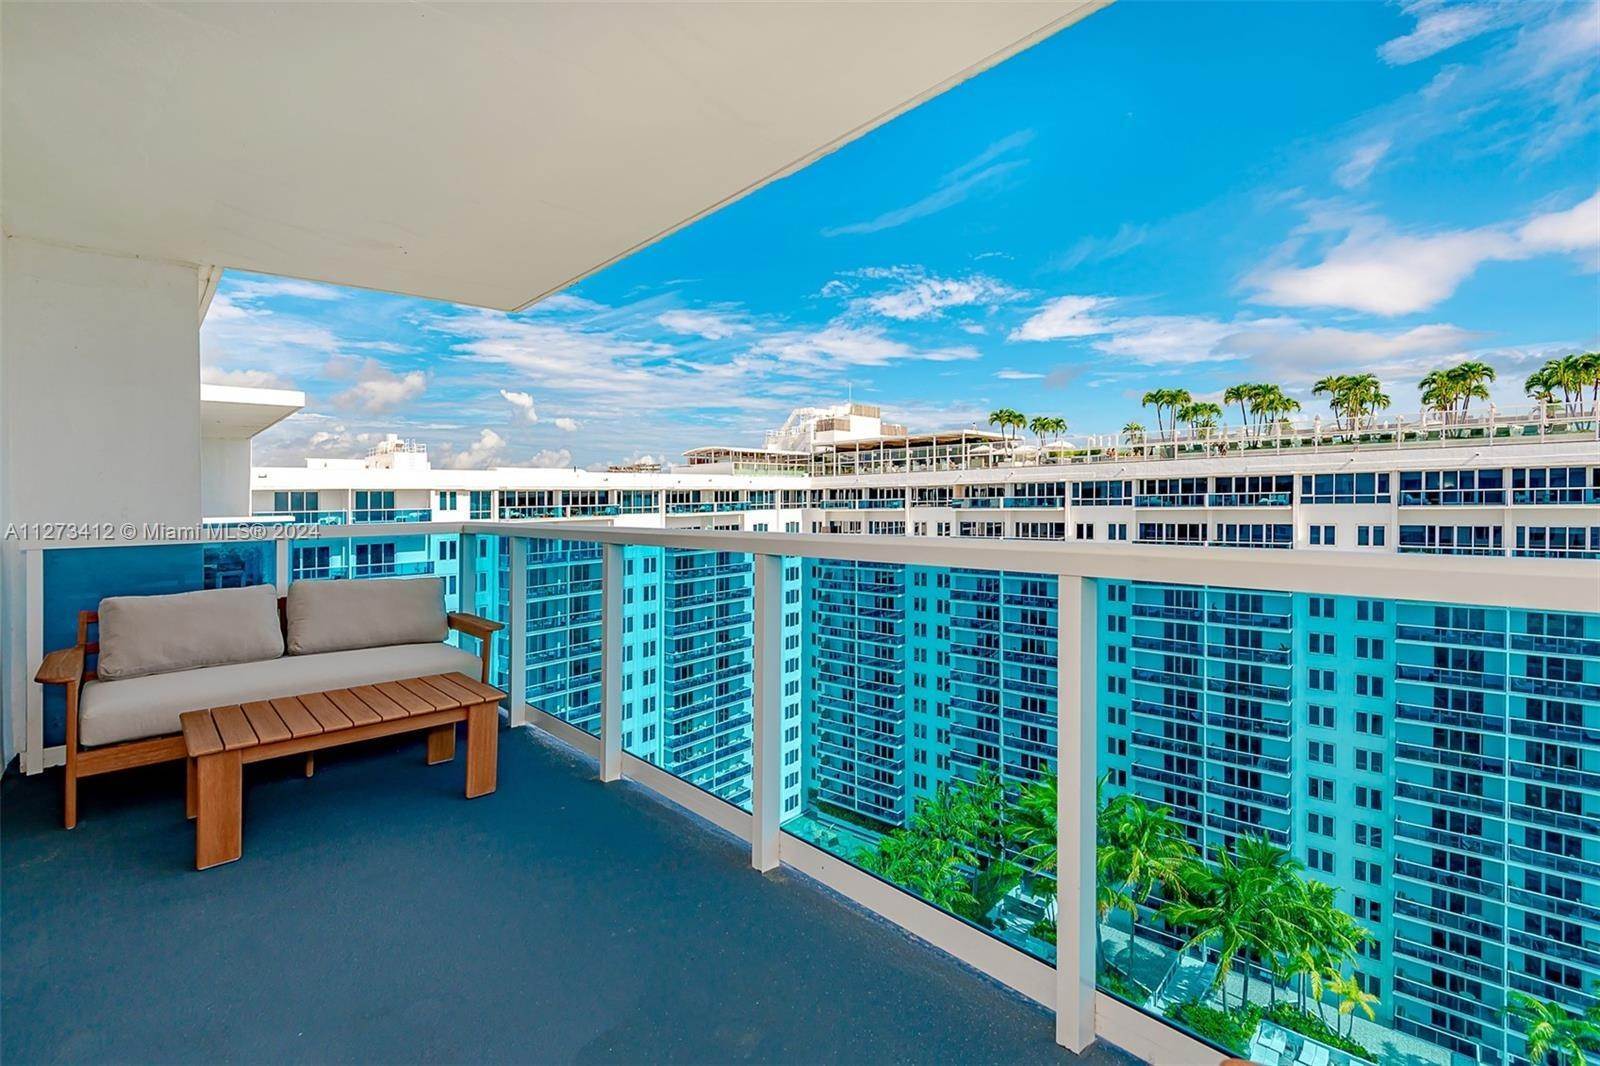 Condominium at Mid Beach, Miami Beach, FL 33139